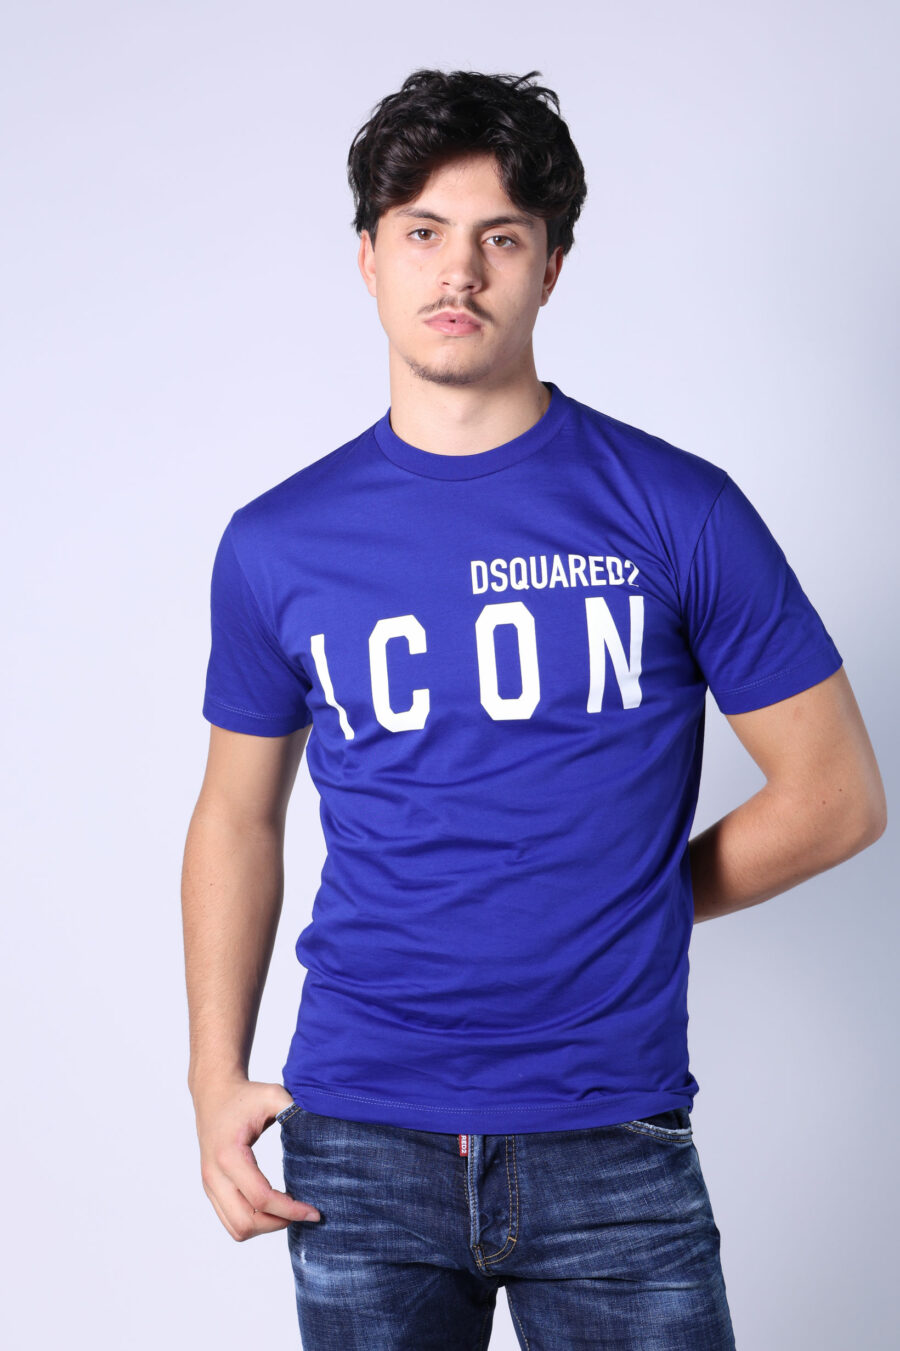 Elektrisch blaues T-Shirt mit weißem "Icon" Maxilogo - Untitled Catalog 05399